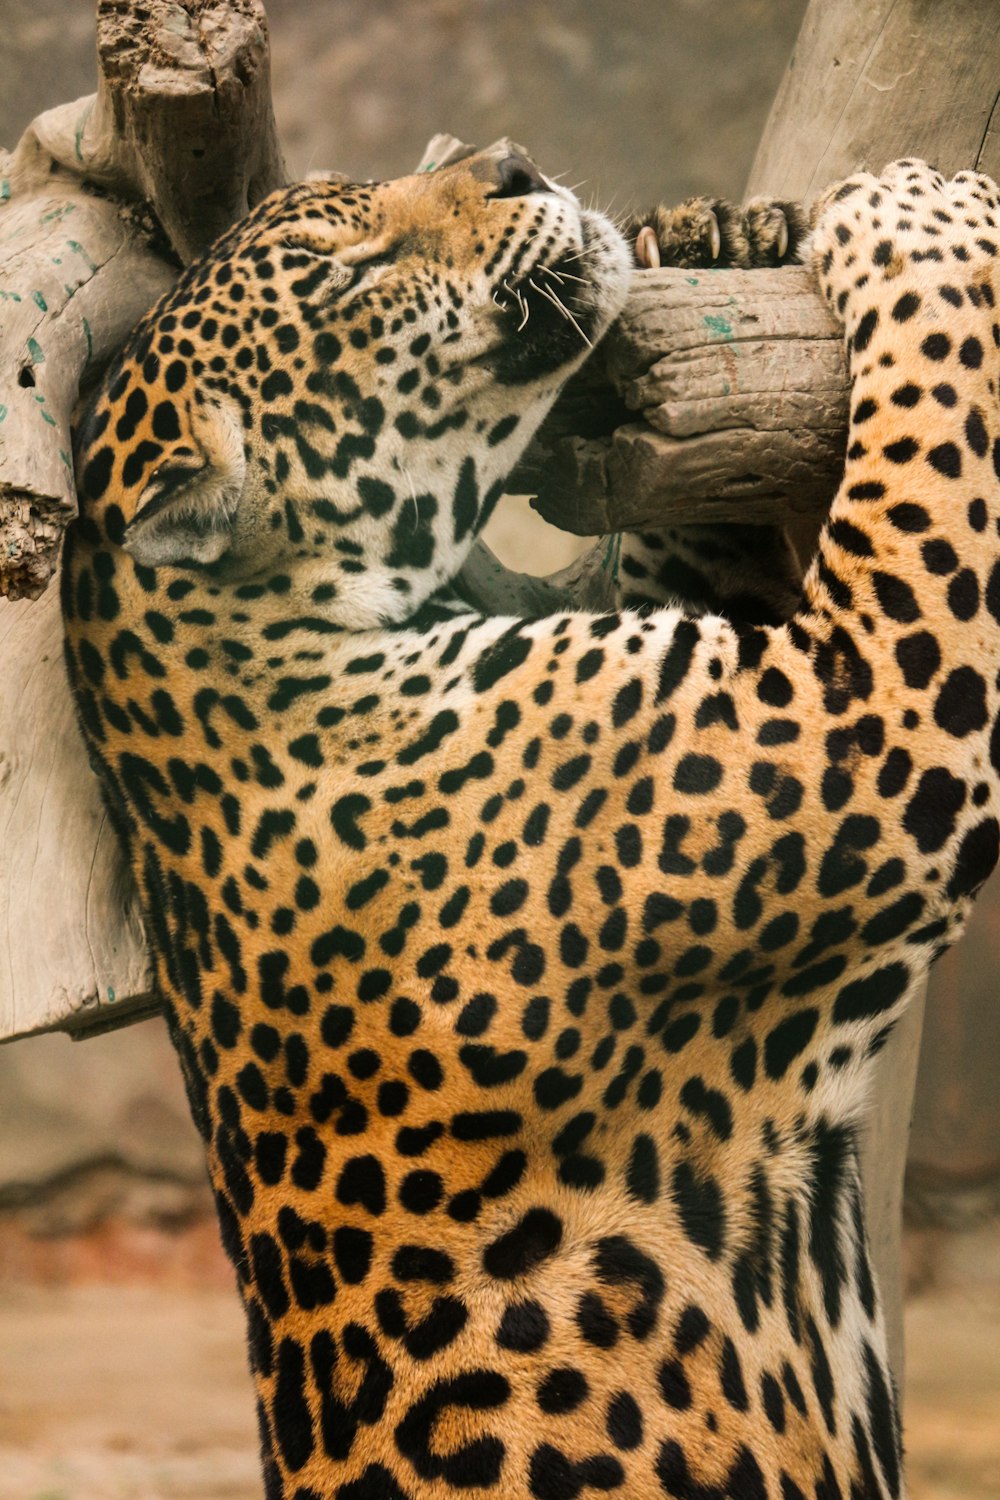 léopard brun et noir couché sur une surface en bois brun